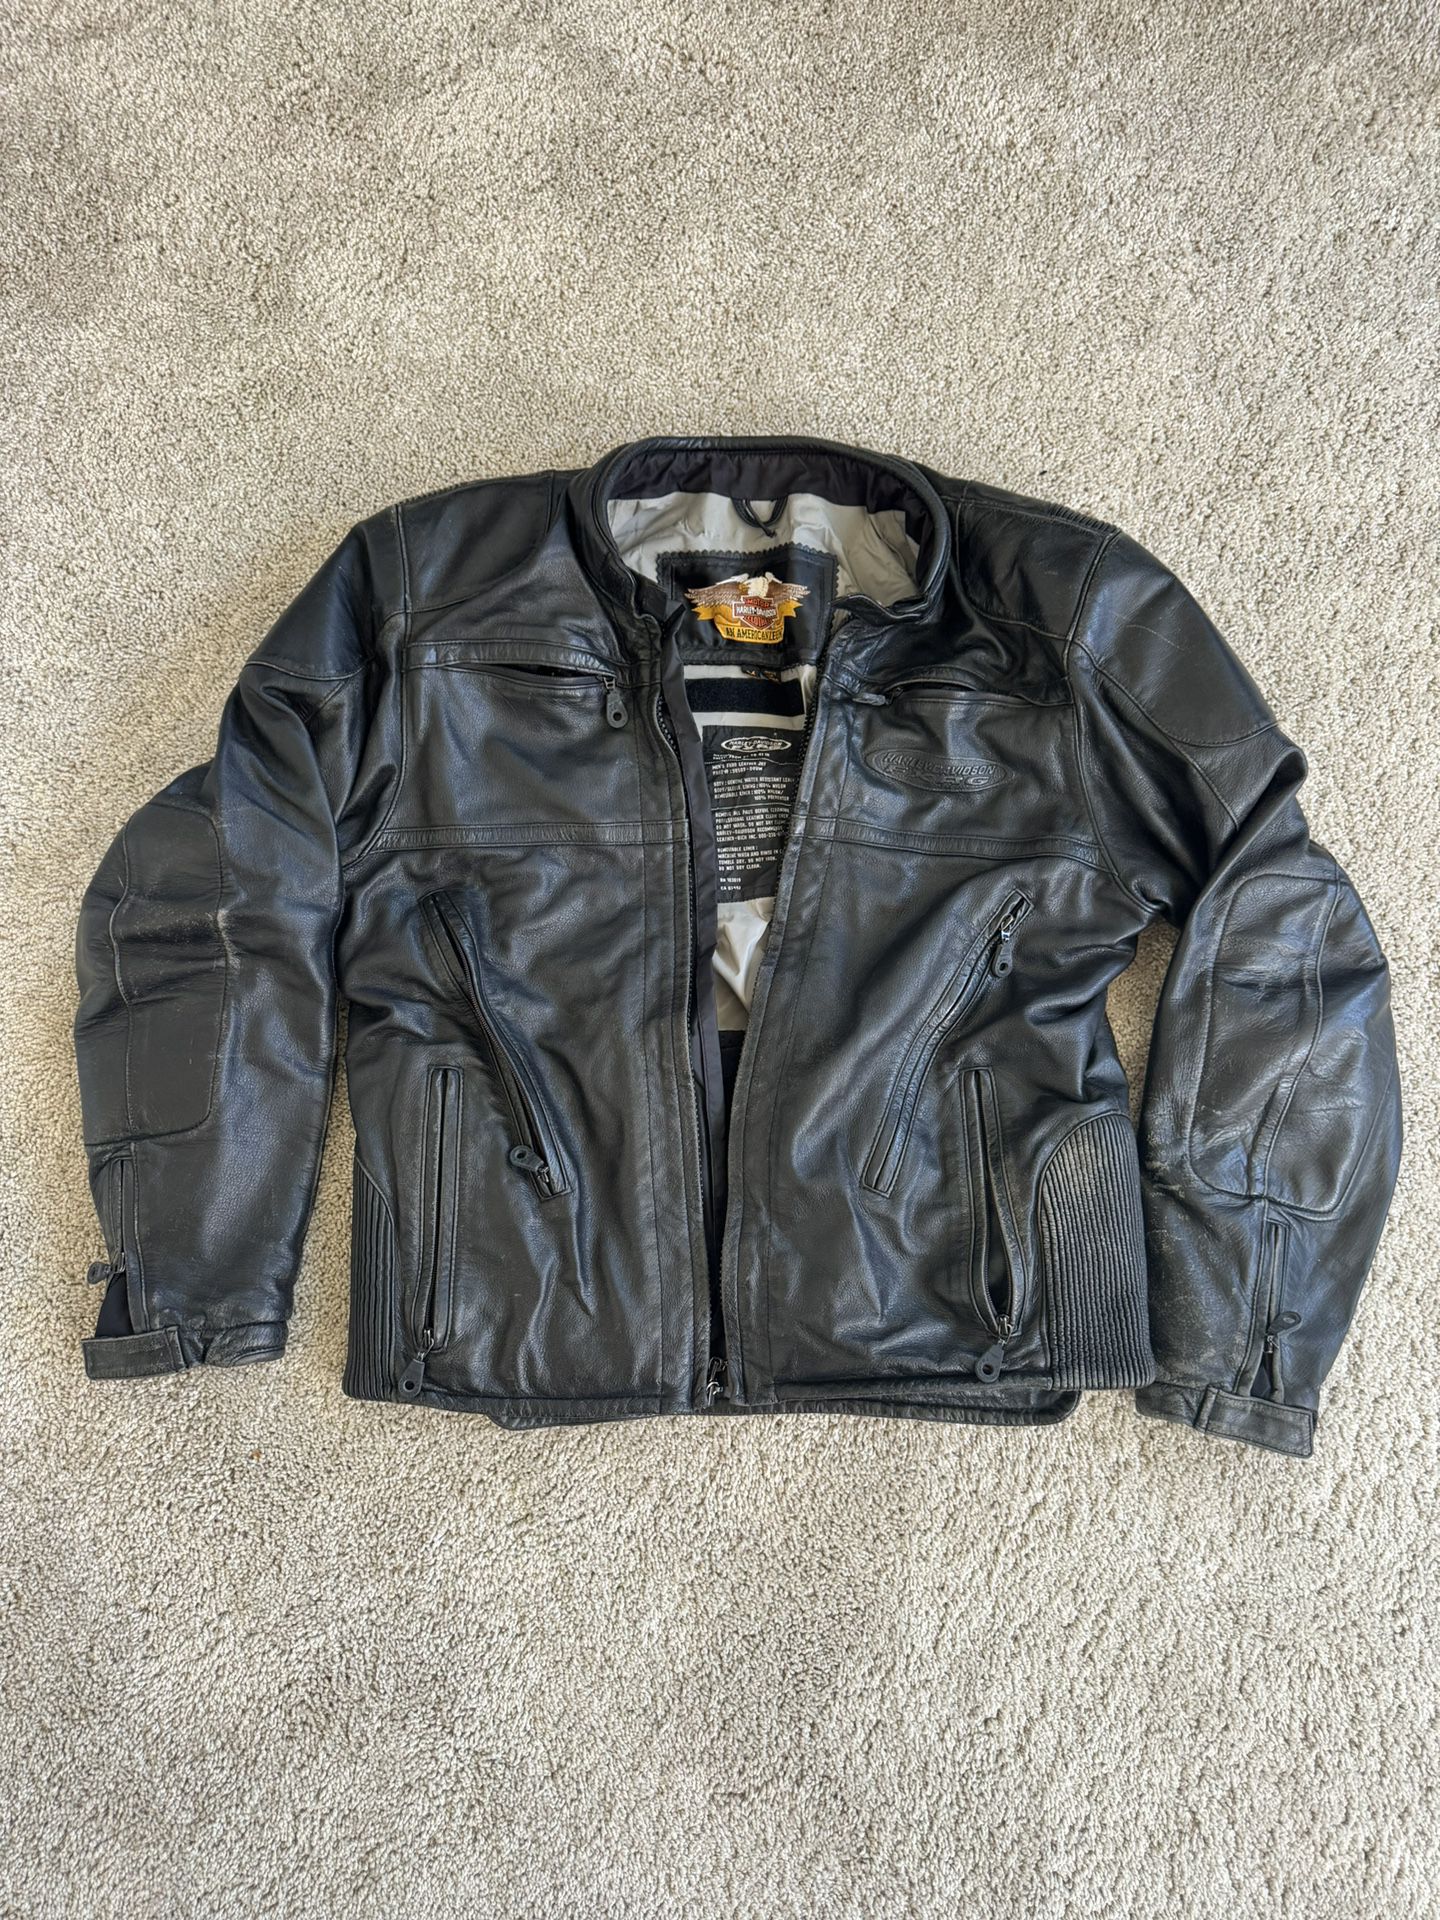 Authentic Harley Leather Jacket - Medium